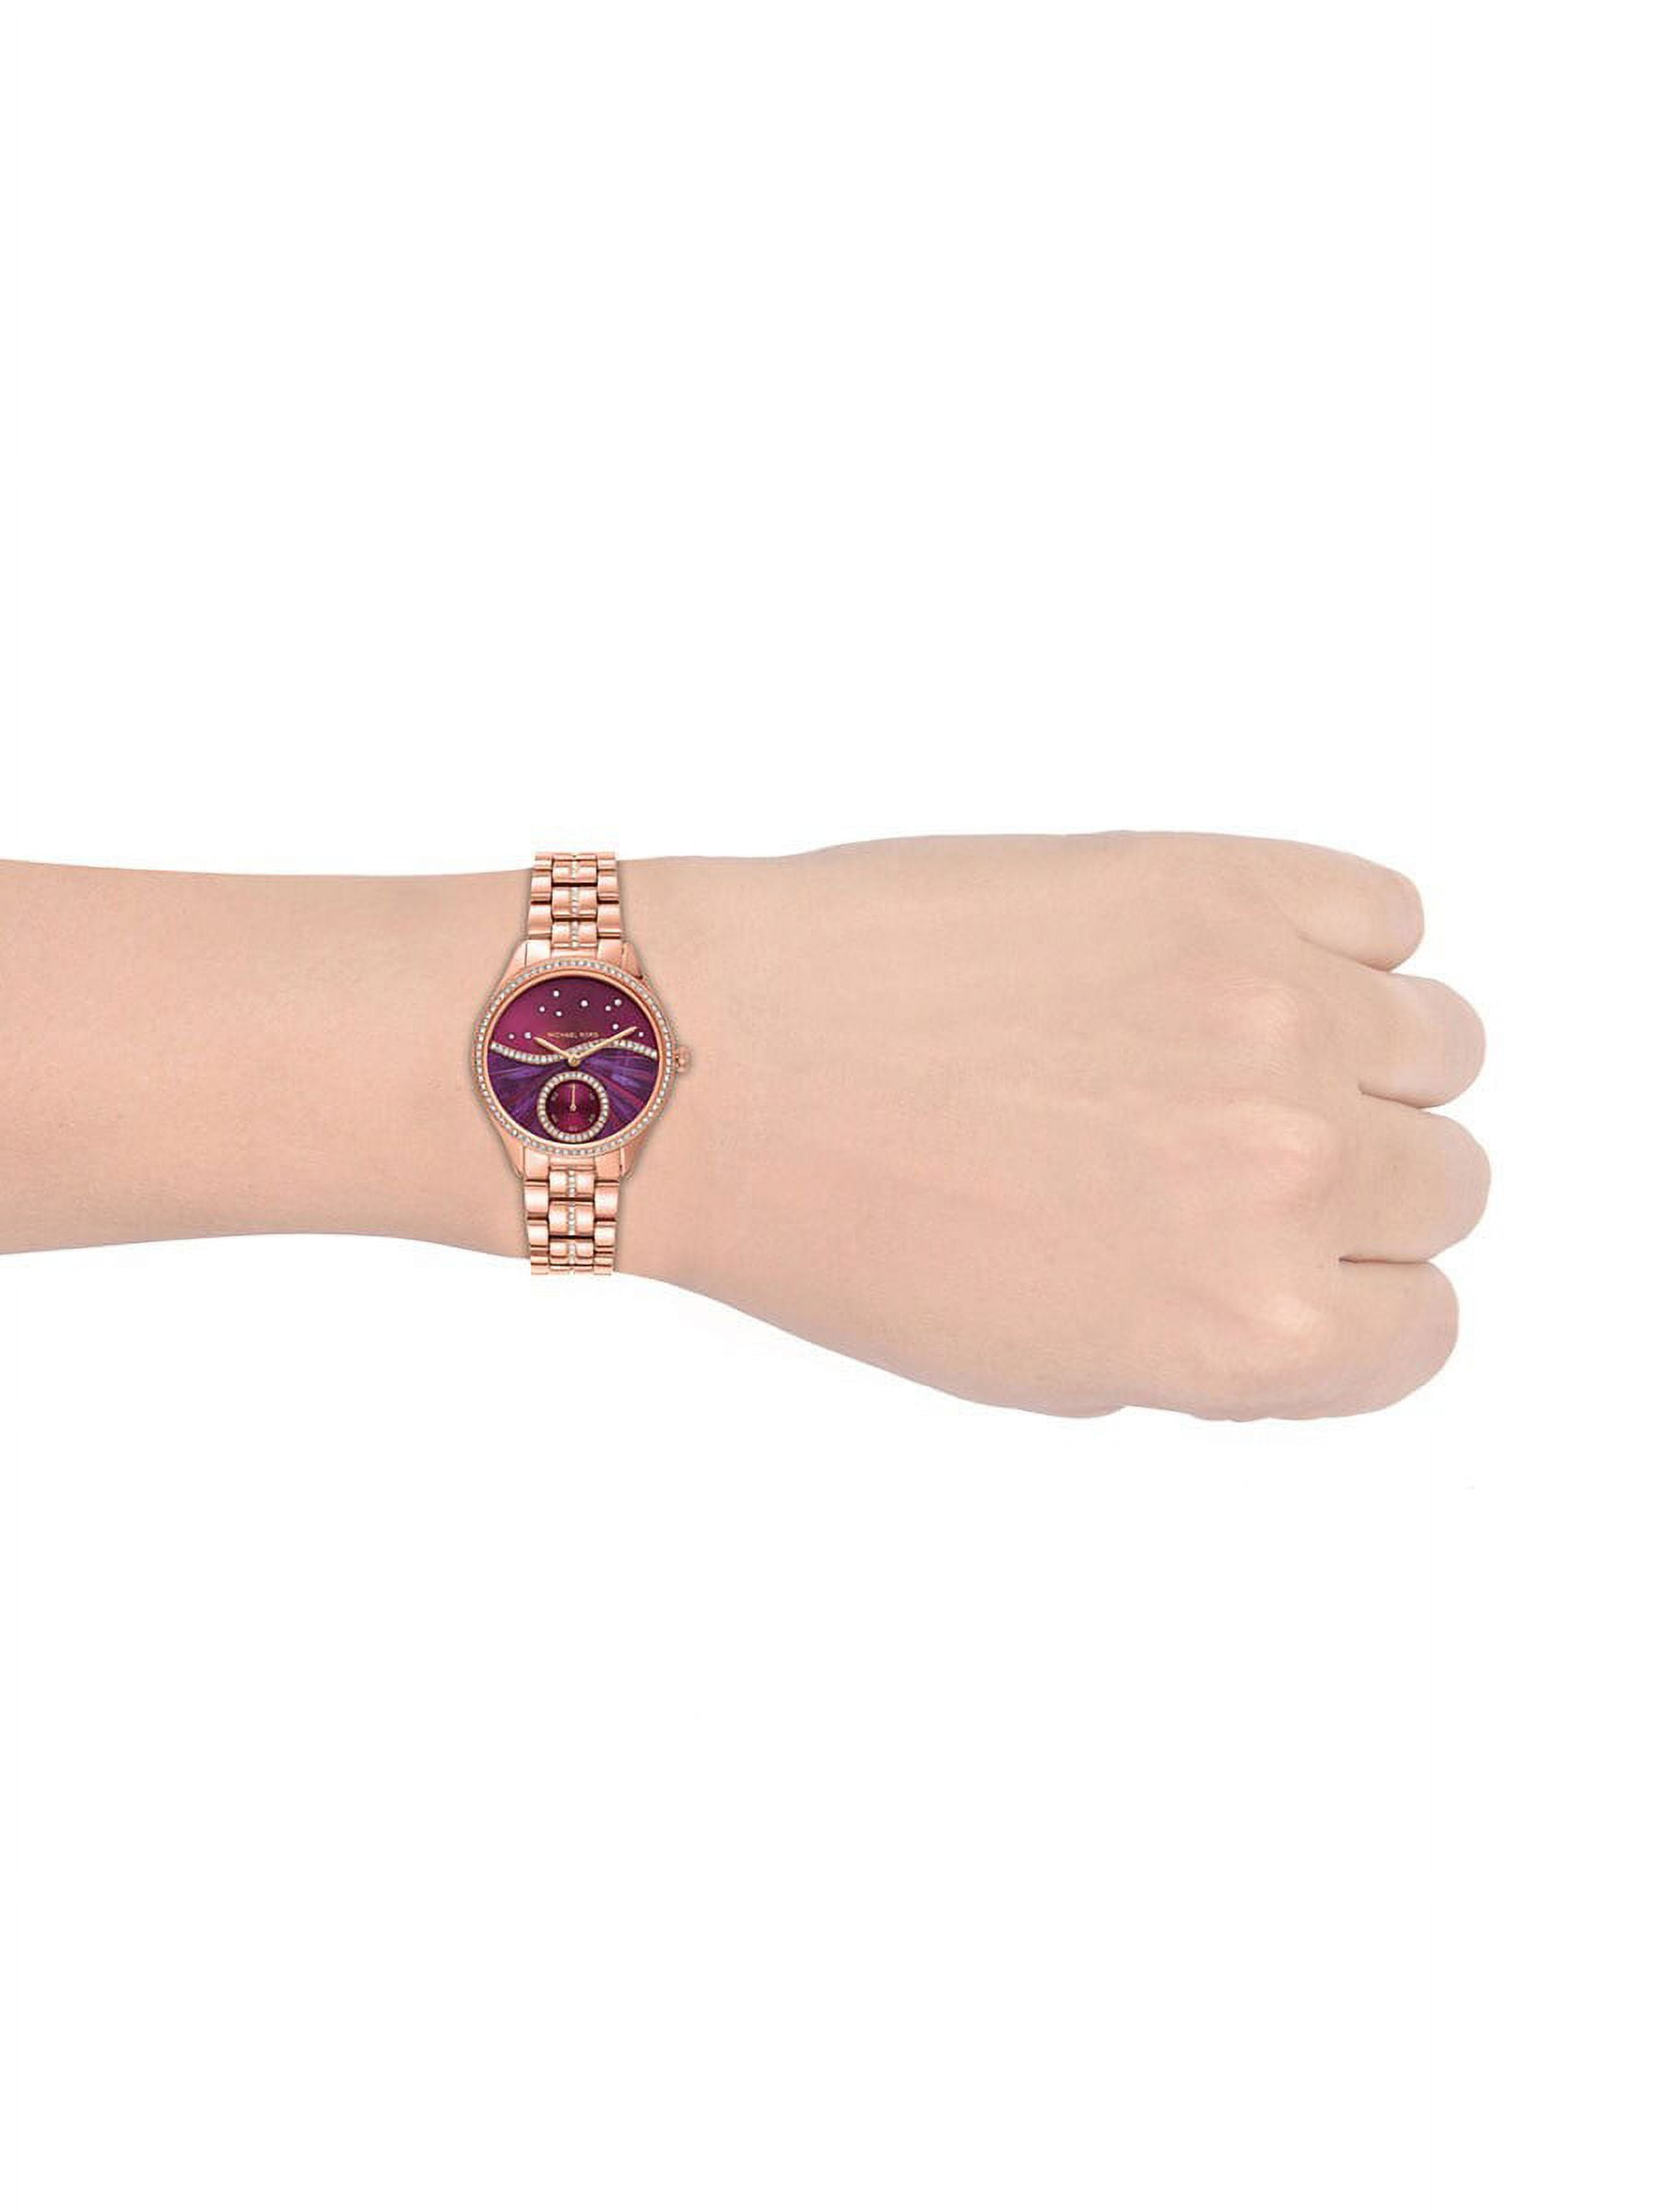 Michael Kors Women's Lauryn Purple Dial Watch - MK4437